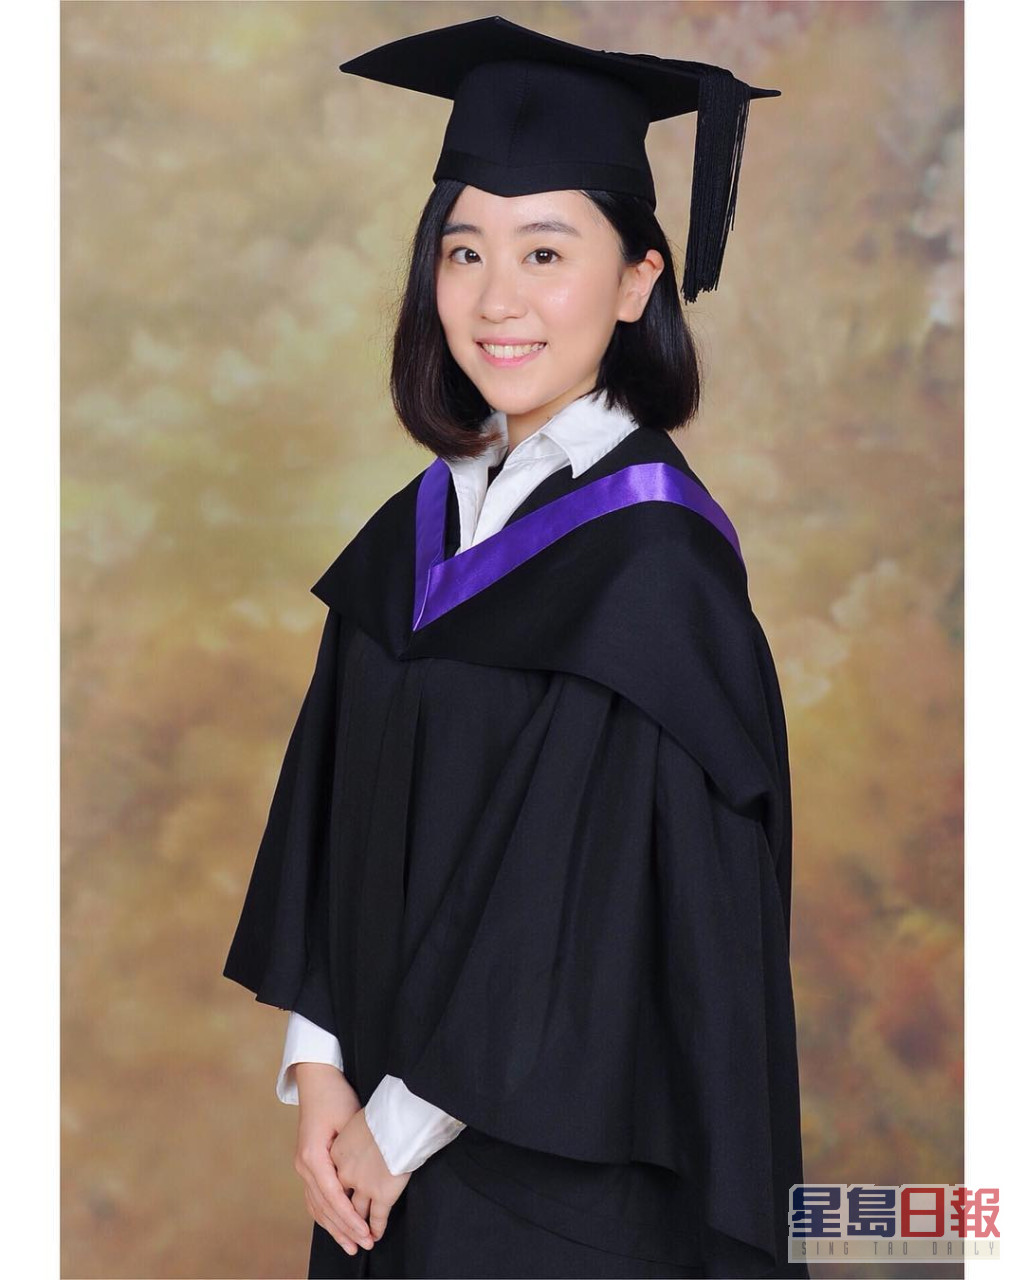 林静莉毕业于香港树仁大学新闻系。